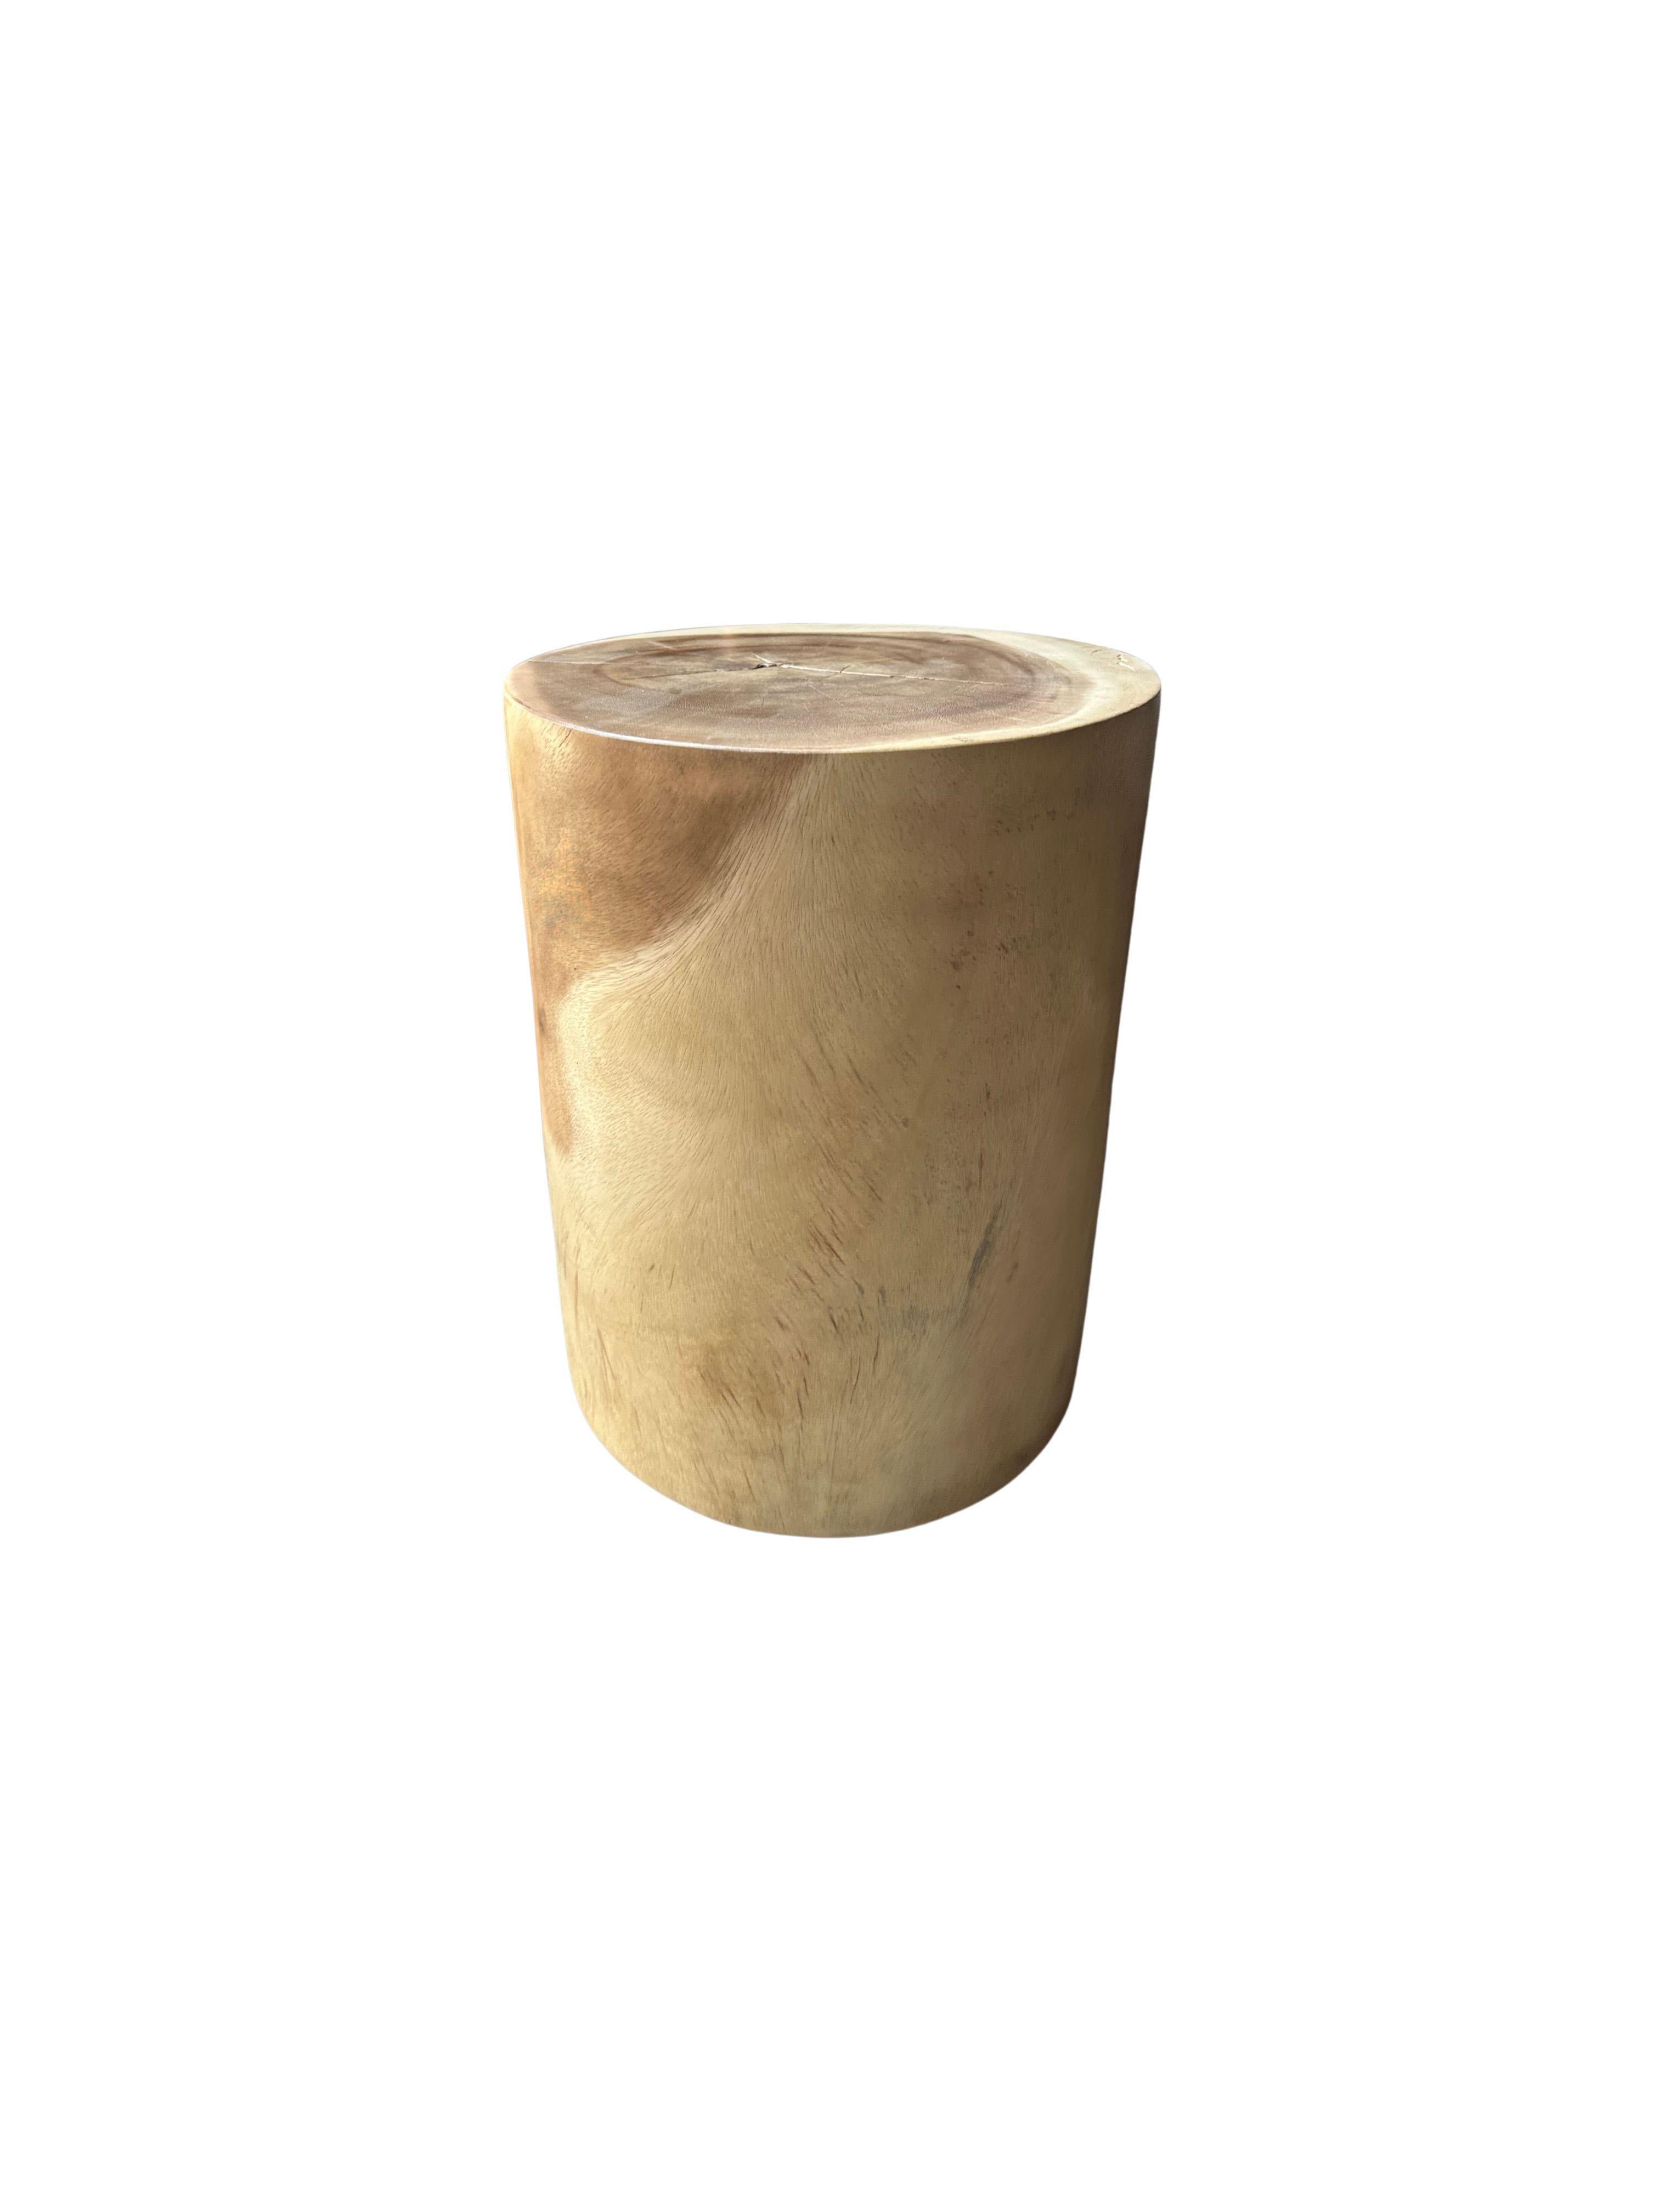 Ein wunderbar minimalistischer Beistelltisch aus massivem Mangoholz. Einzigartig an Suar sind die abstrakten und kontrastreichen Holzmuster und Farbtöne. Von lokalen Kunsthandwerkern handgefertigt, ist dies das perfekte Objekt, um Wärme in jeden